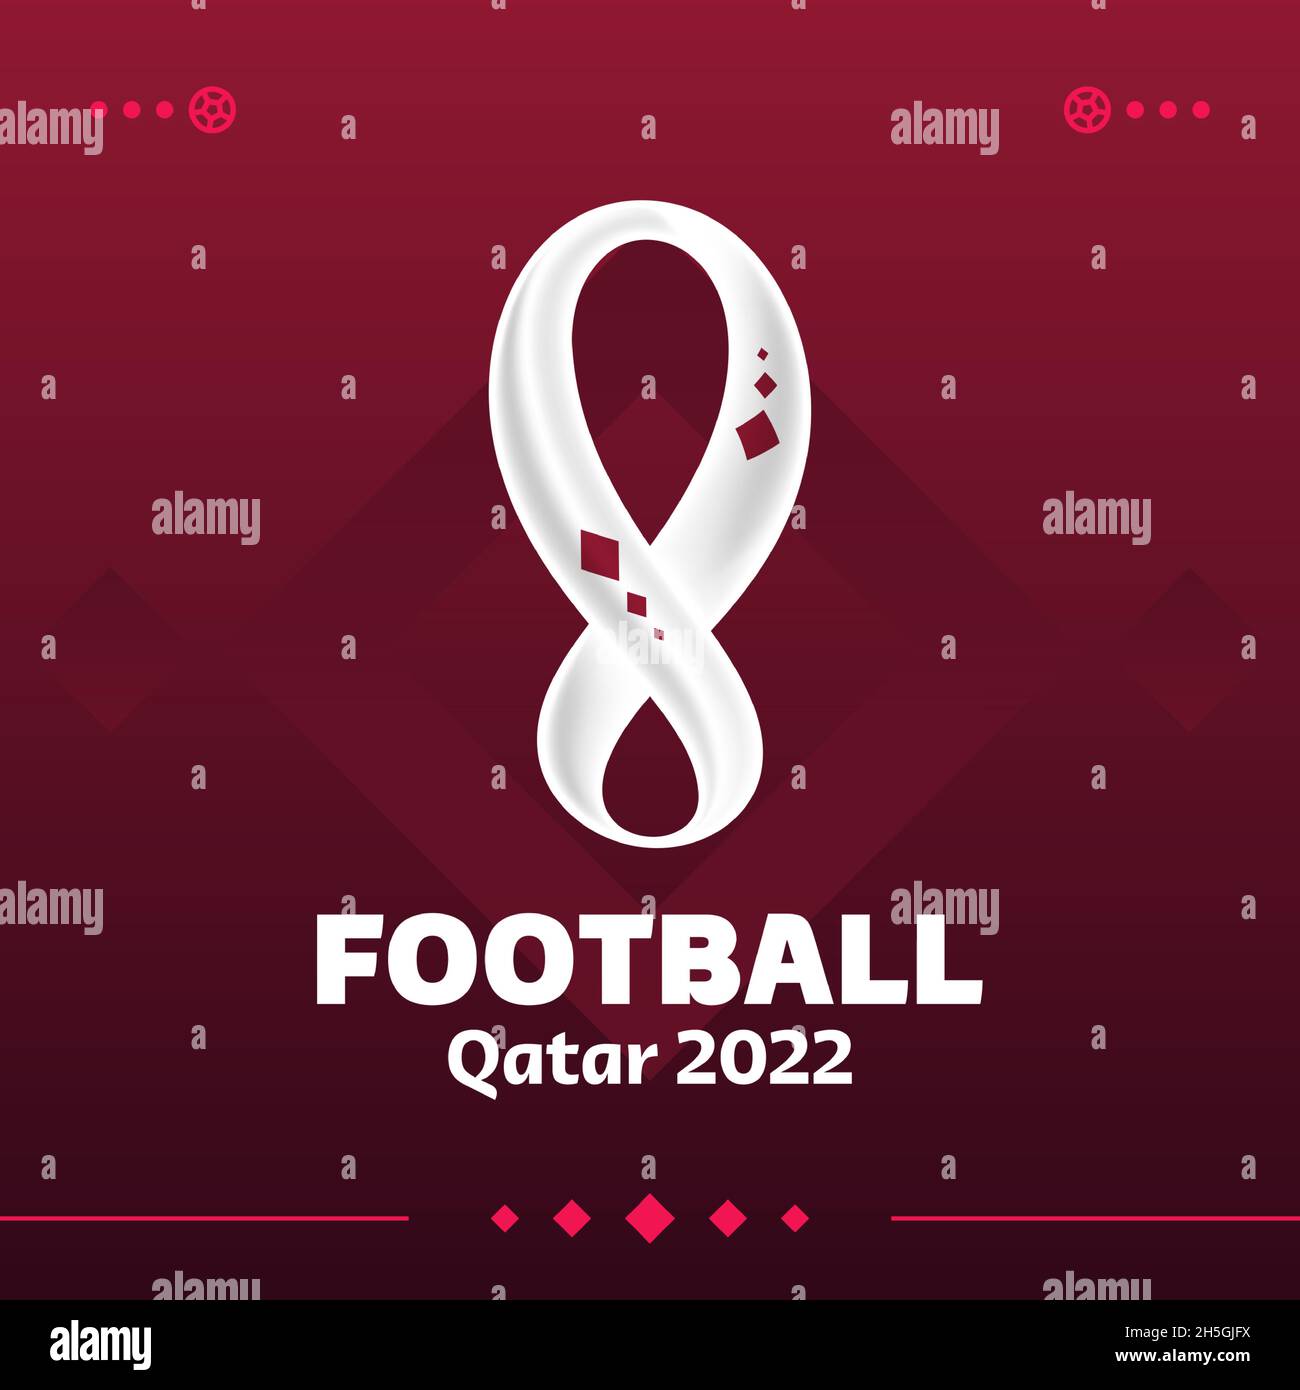 Bóng đá Worldcup Qatar 2022: World Cup 2022 sẽ diễn ra tại đất nước với những cảnh quan tuyệt đẹp và thiết kế độc đáo. Hãy đến với ảnh liên quan để cảm nhận ngay không khí sôi động và để sẵn sàng cùng hy vọng chờ đón những trận đấu đỉnh cao.